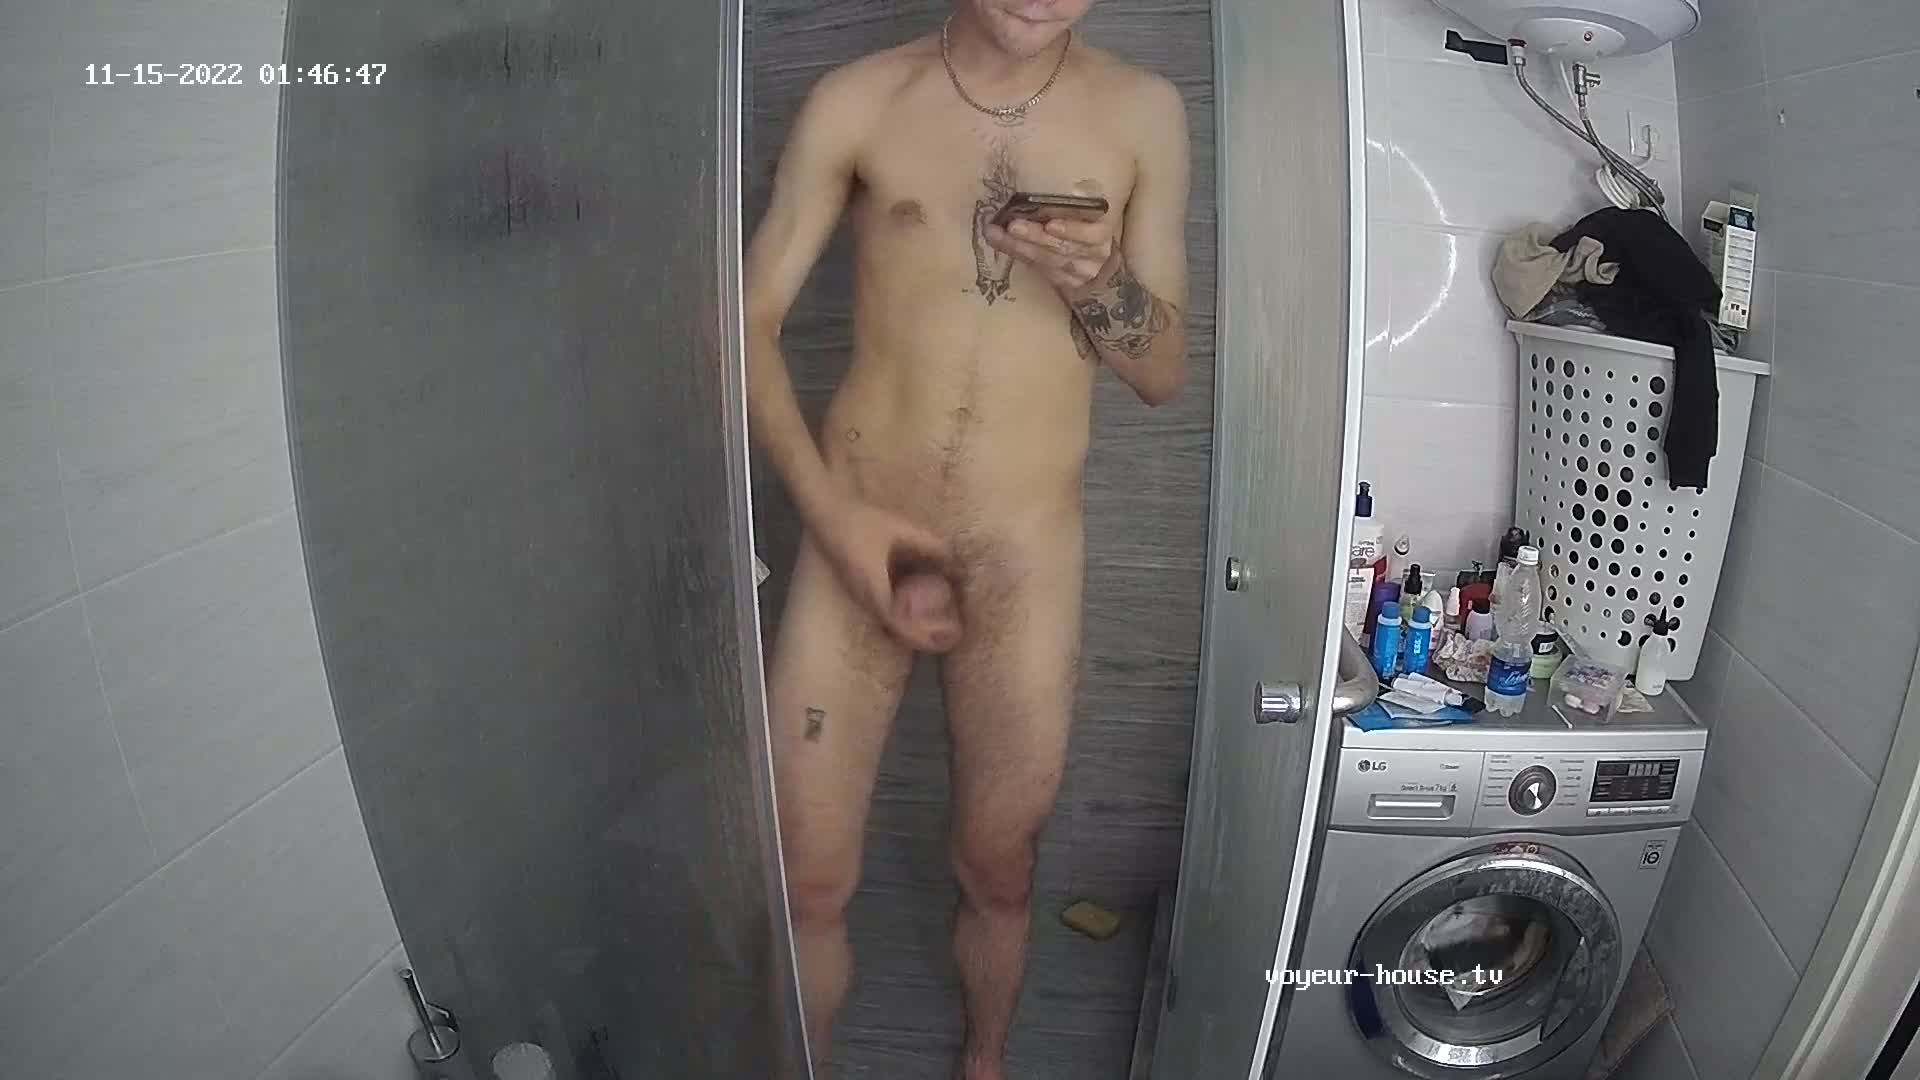 Artem jerking off in the shower 15 Nov 2022